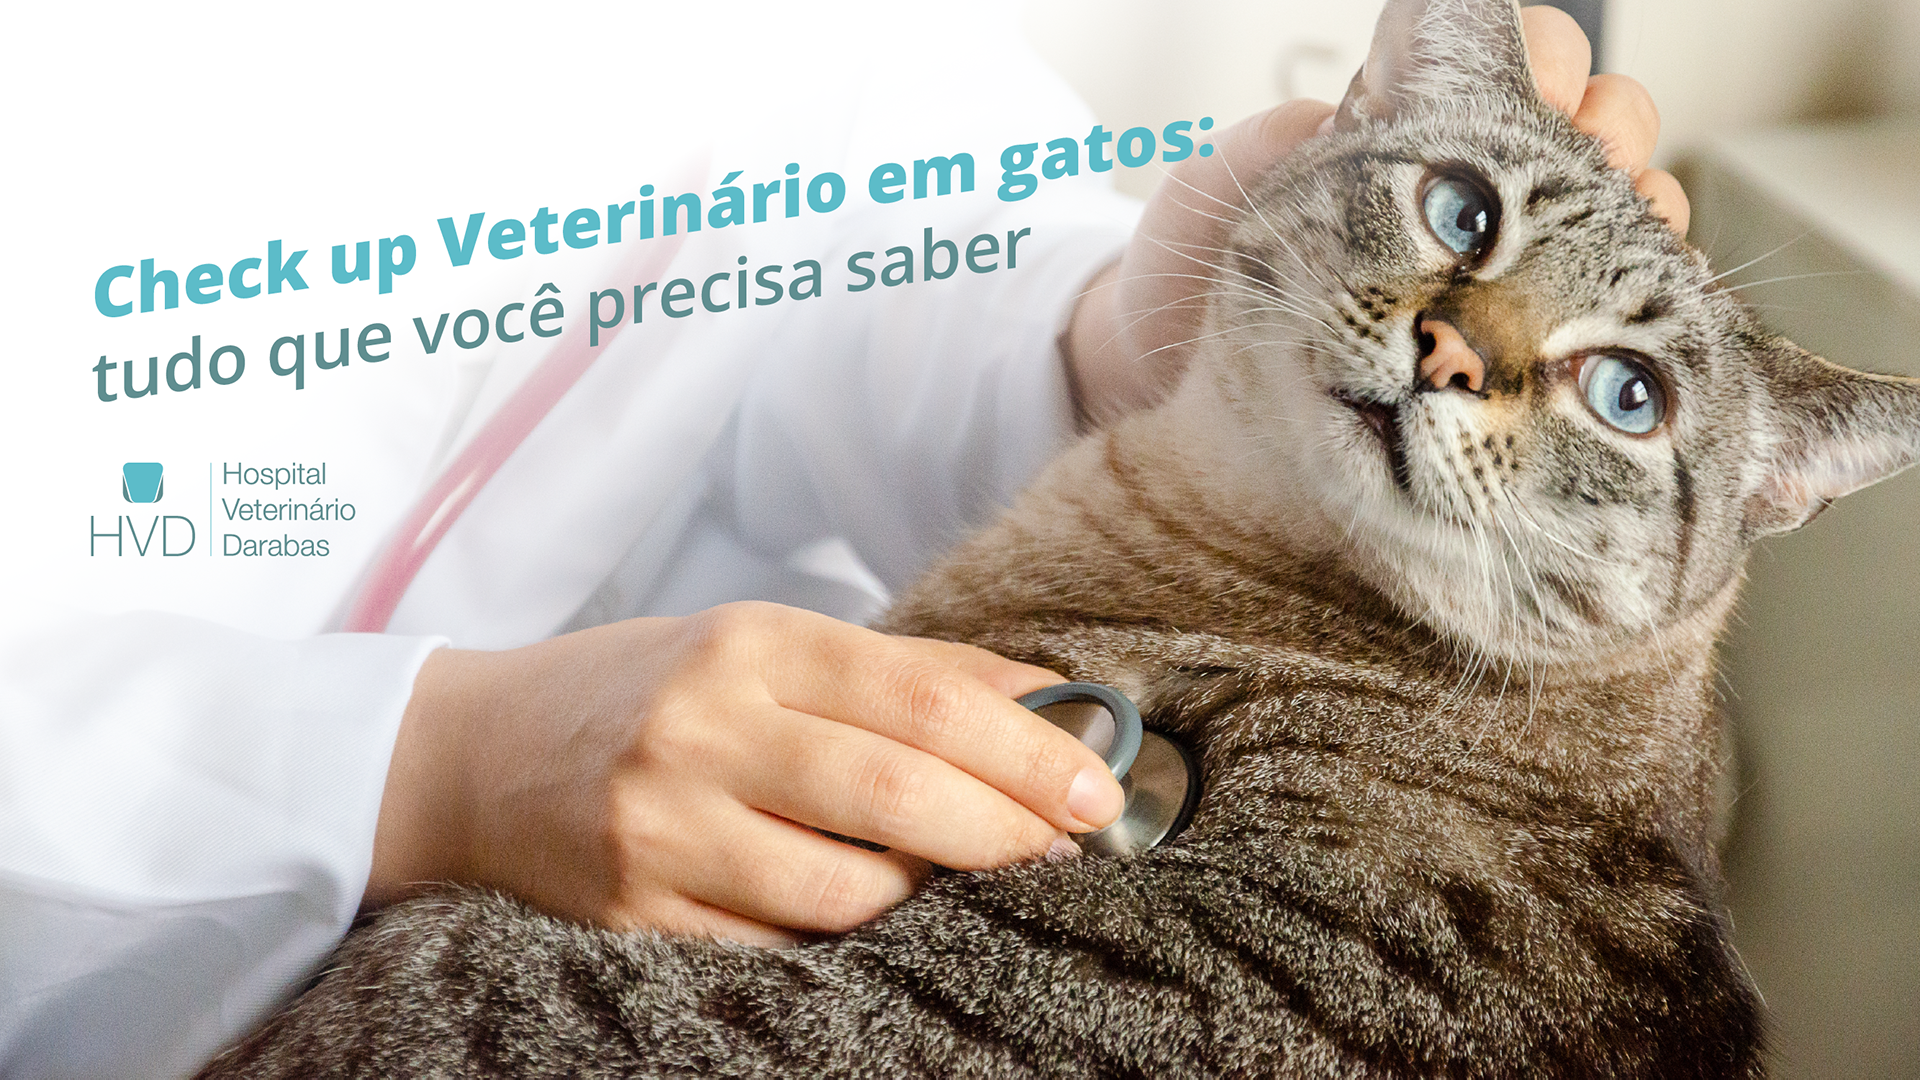 Check up Veterinário em gatos: tudo que você precisa saber